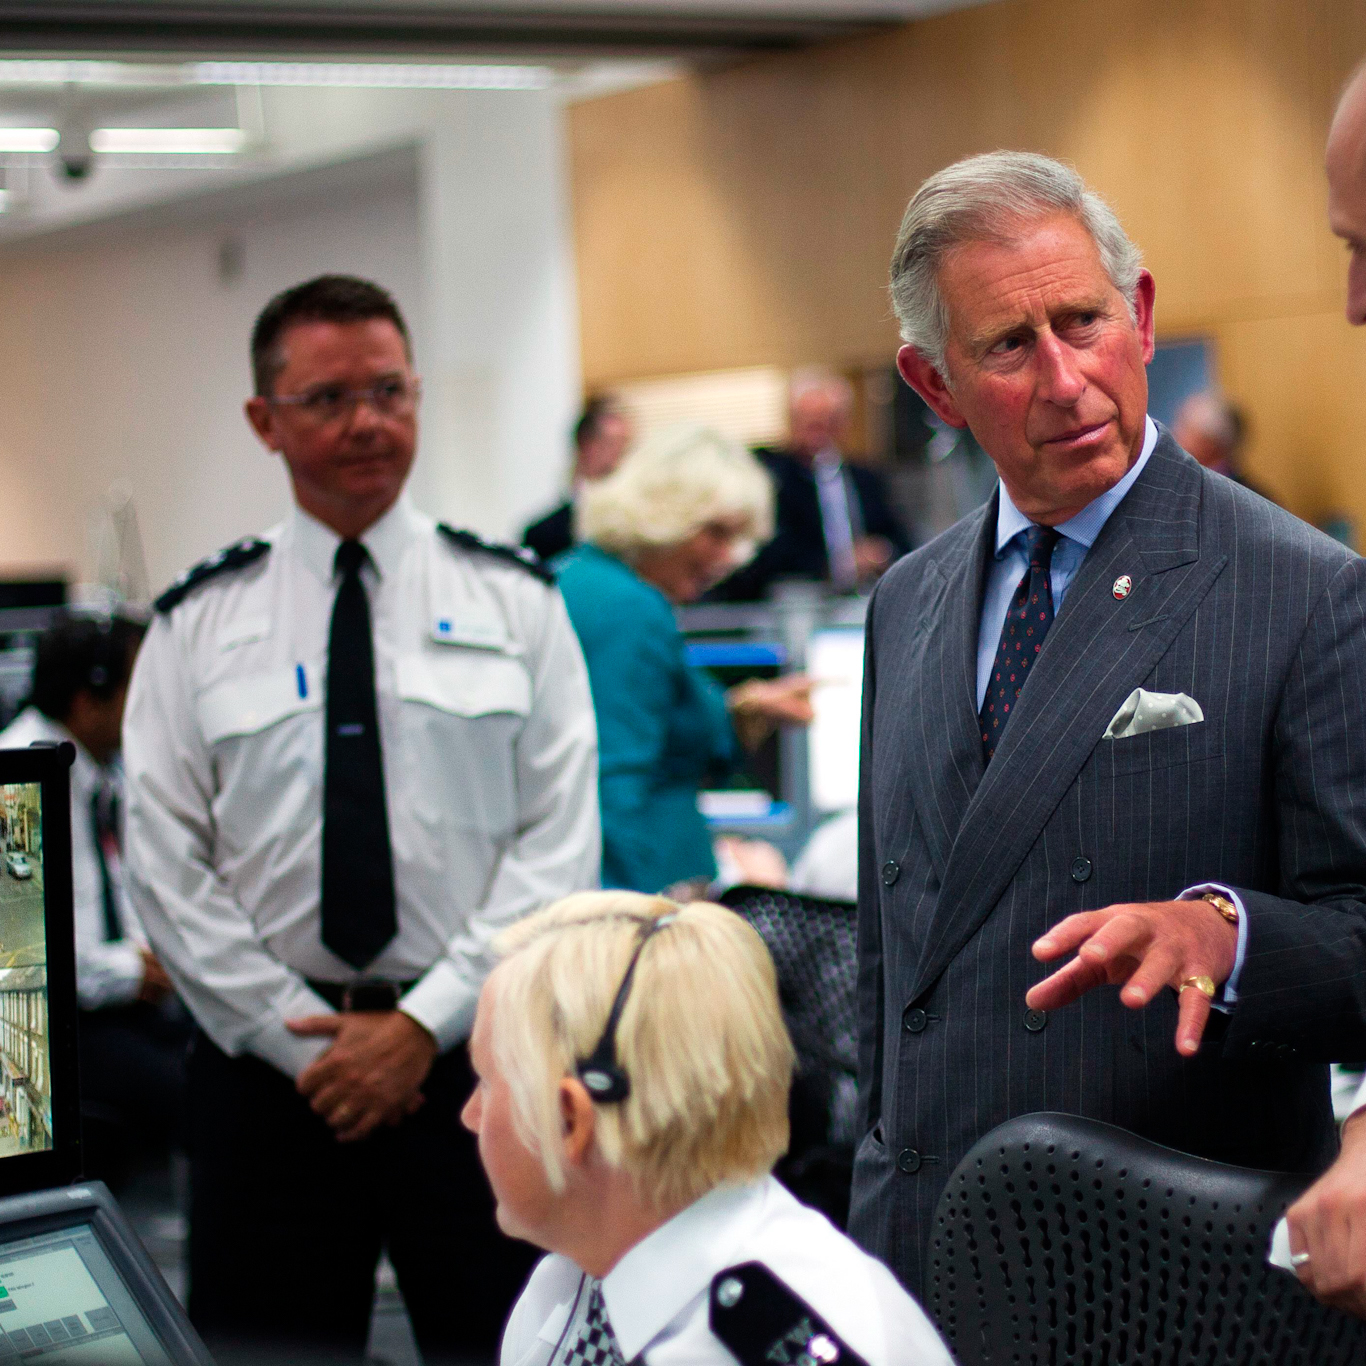 El entonces príncipe Carlos visita el Comando Central de Comunicaciones de la Policía Metropolitana durante los disturbios de Londres de 2011 | Periódicos Express vía AP